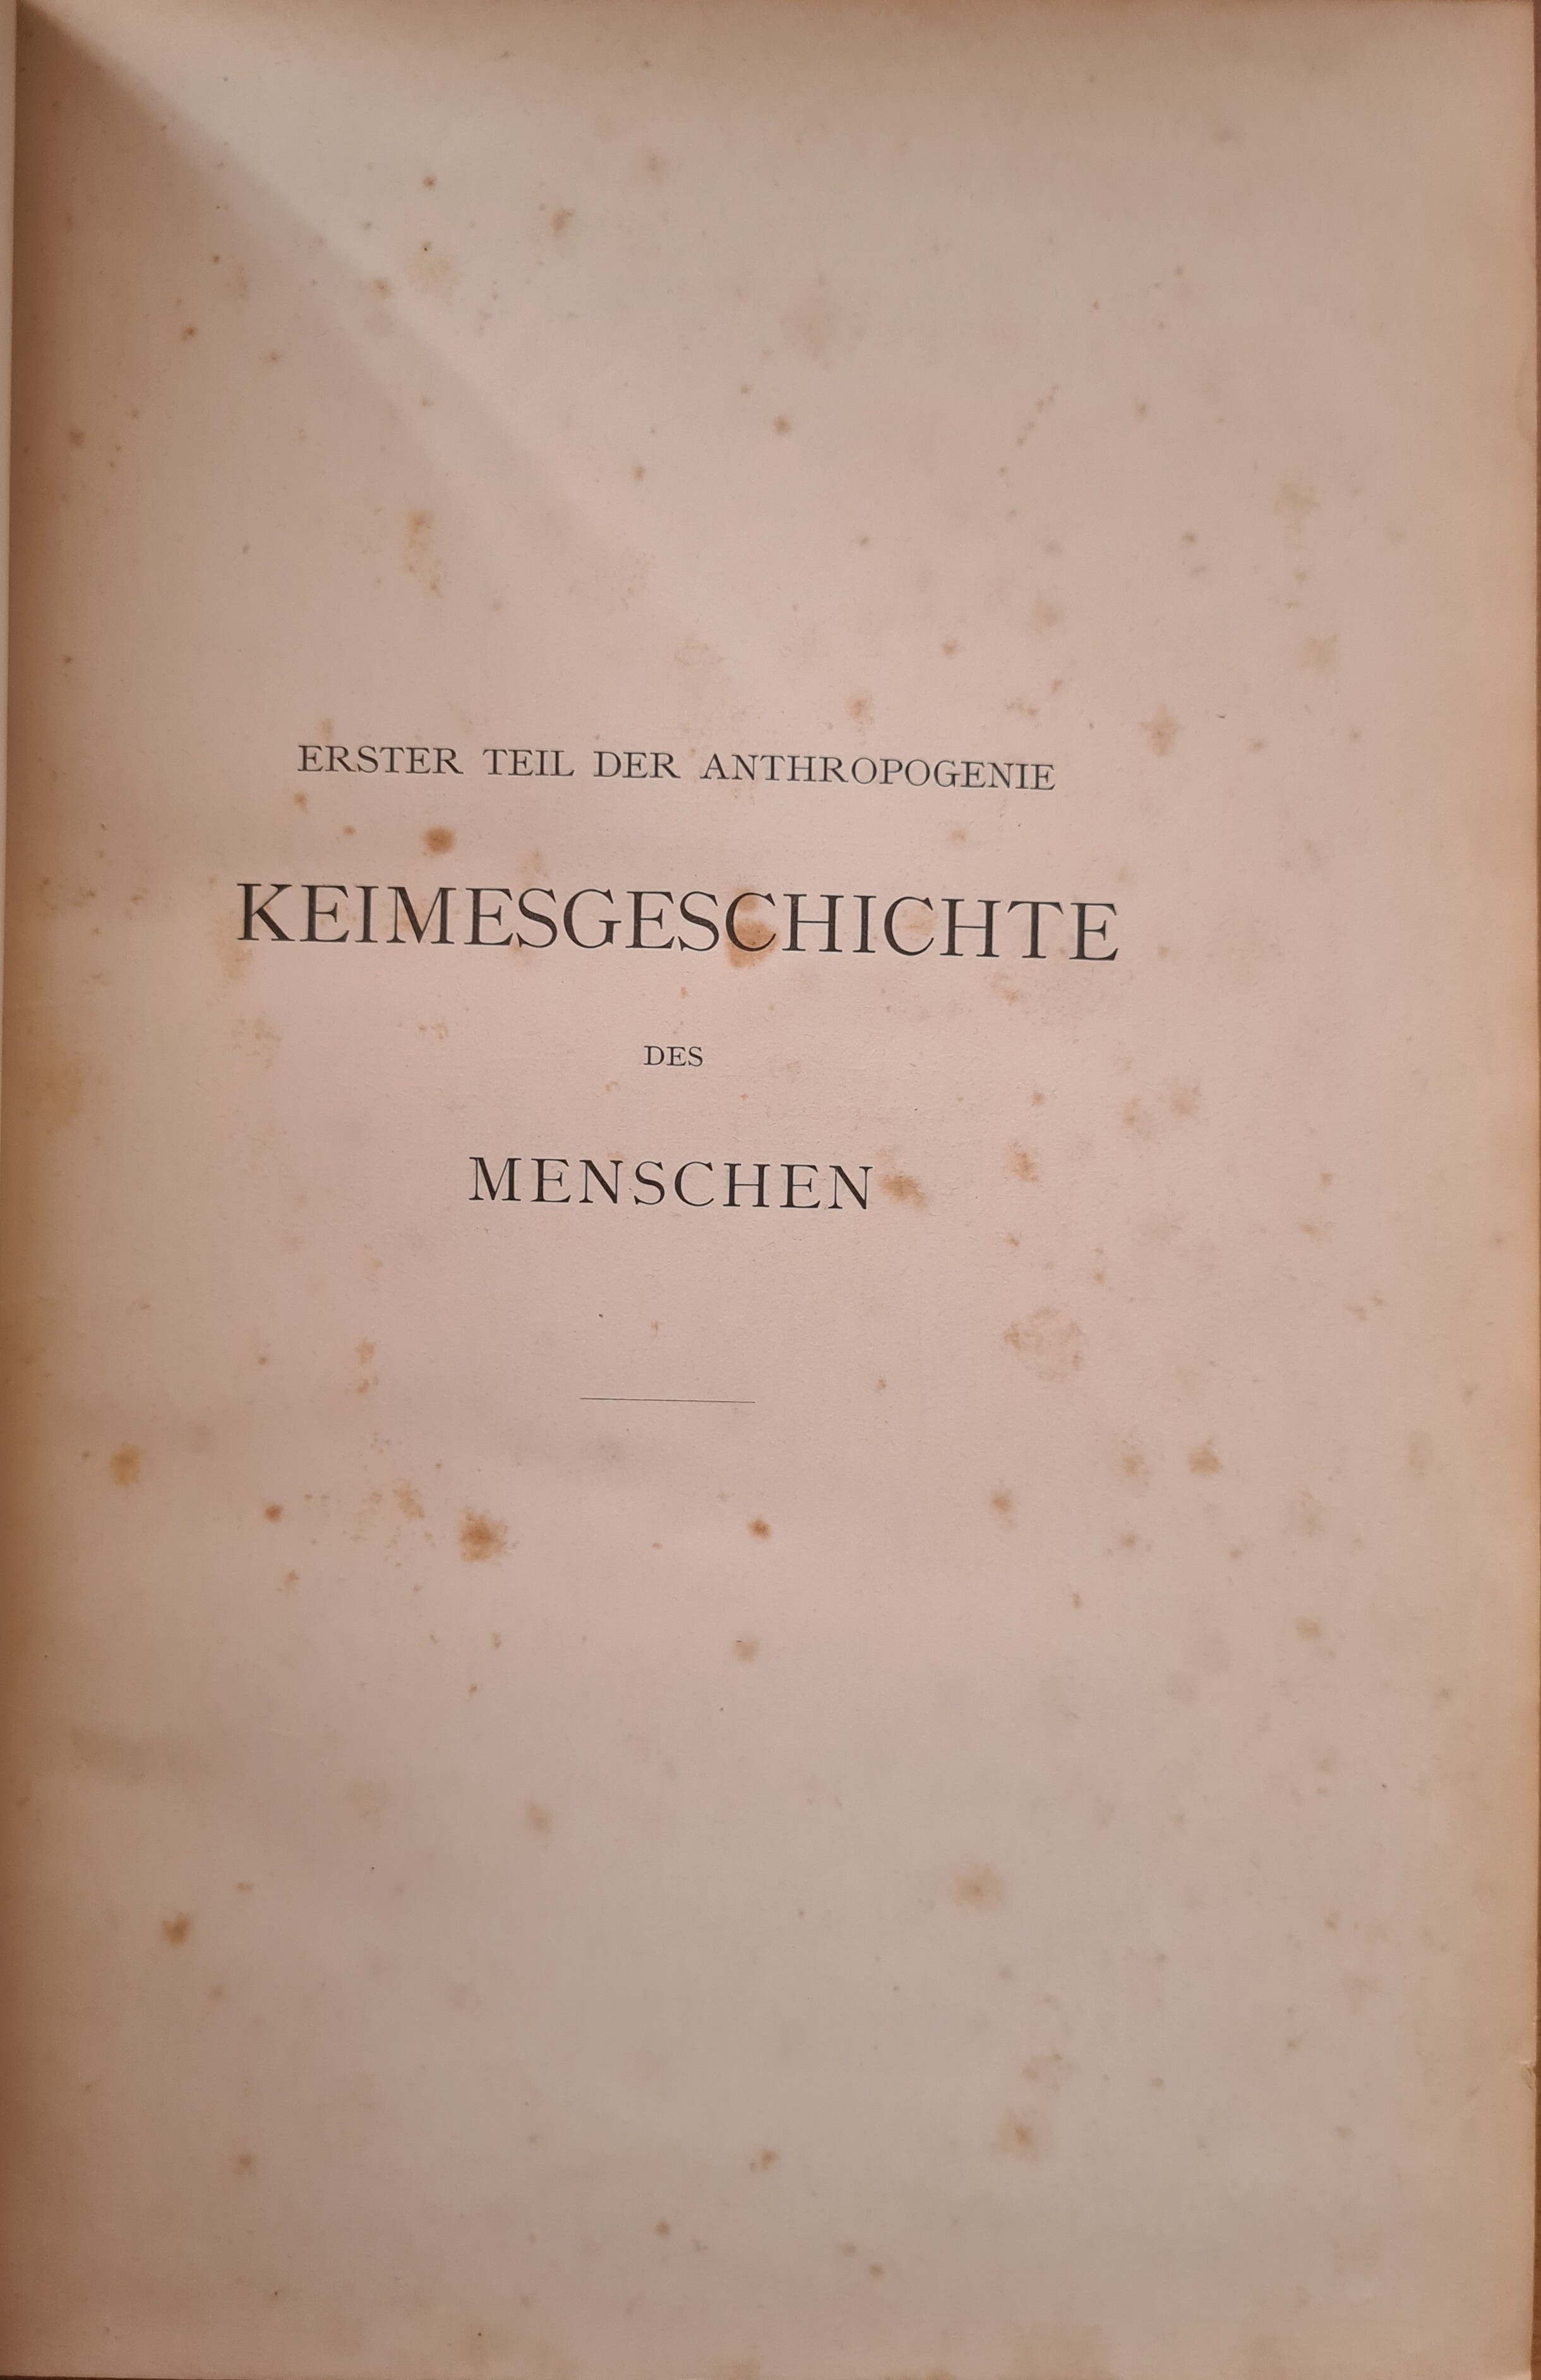 Erster Teil der Anthropogenie – Keimesgeschichte des Menschen (Krankenhausmuseum Bielefeld e.V. CC BY-NC-SA)